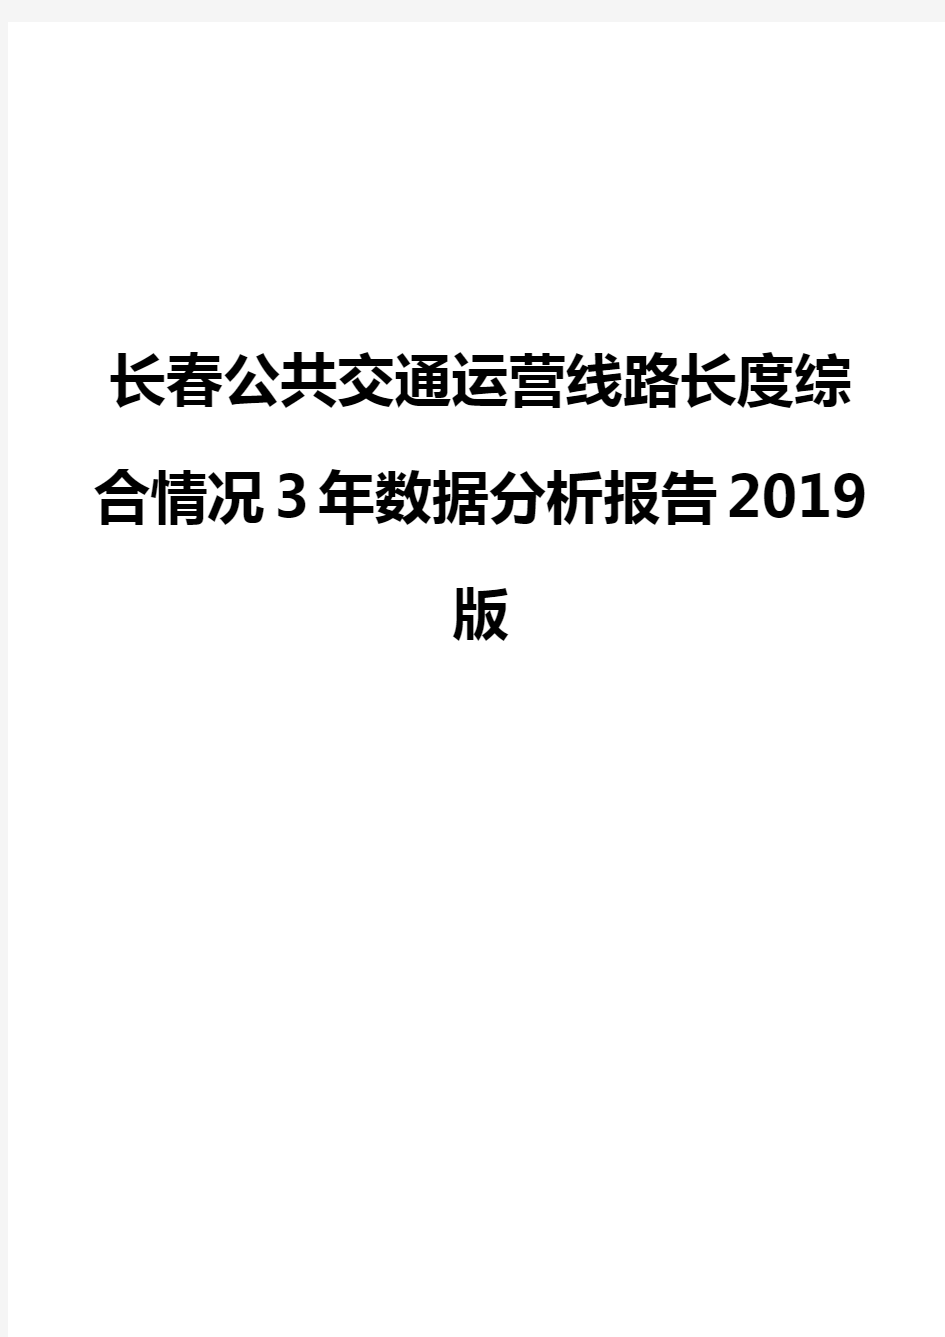 长春公共交通运营线路长度综合情况3年数据分析报告2019版